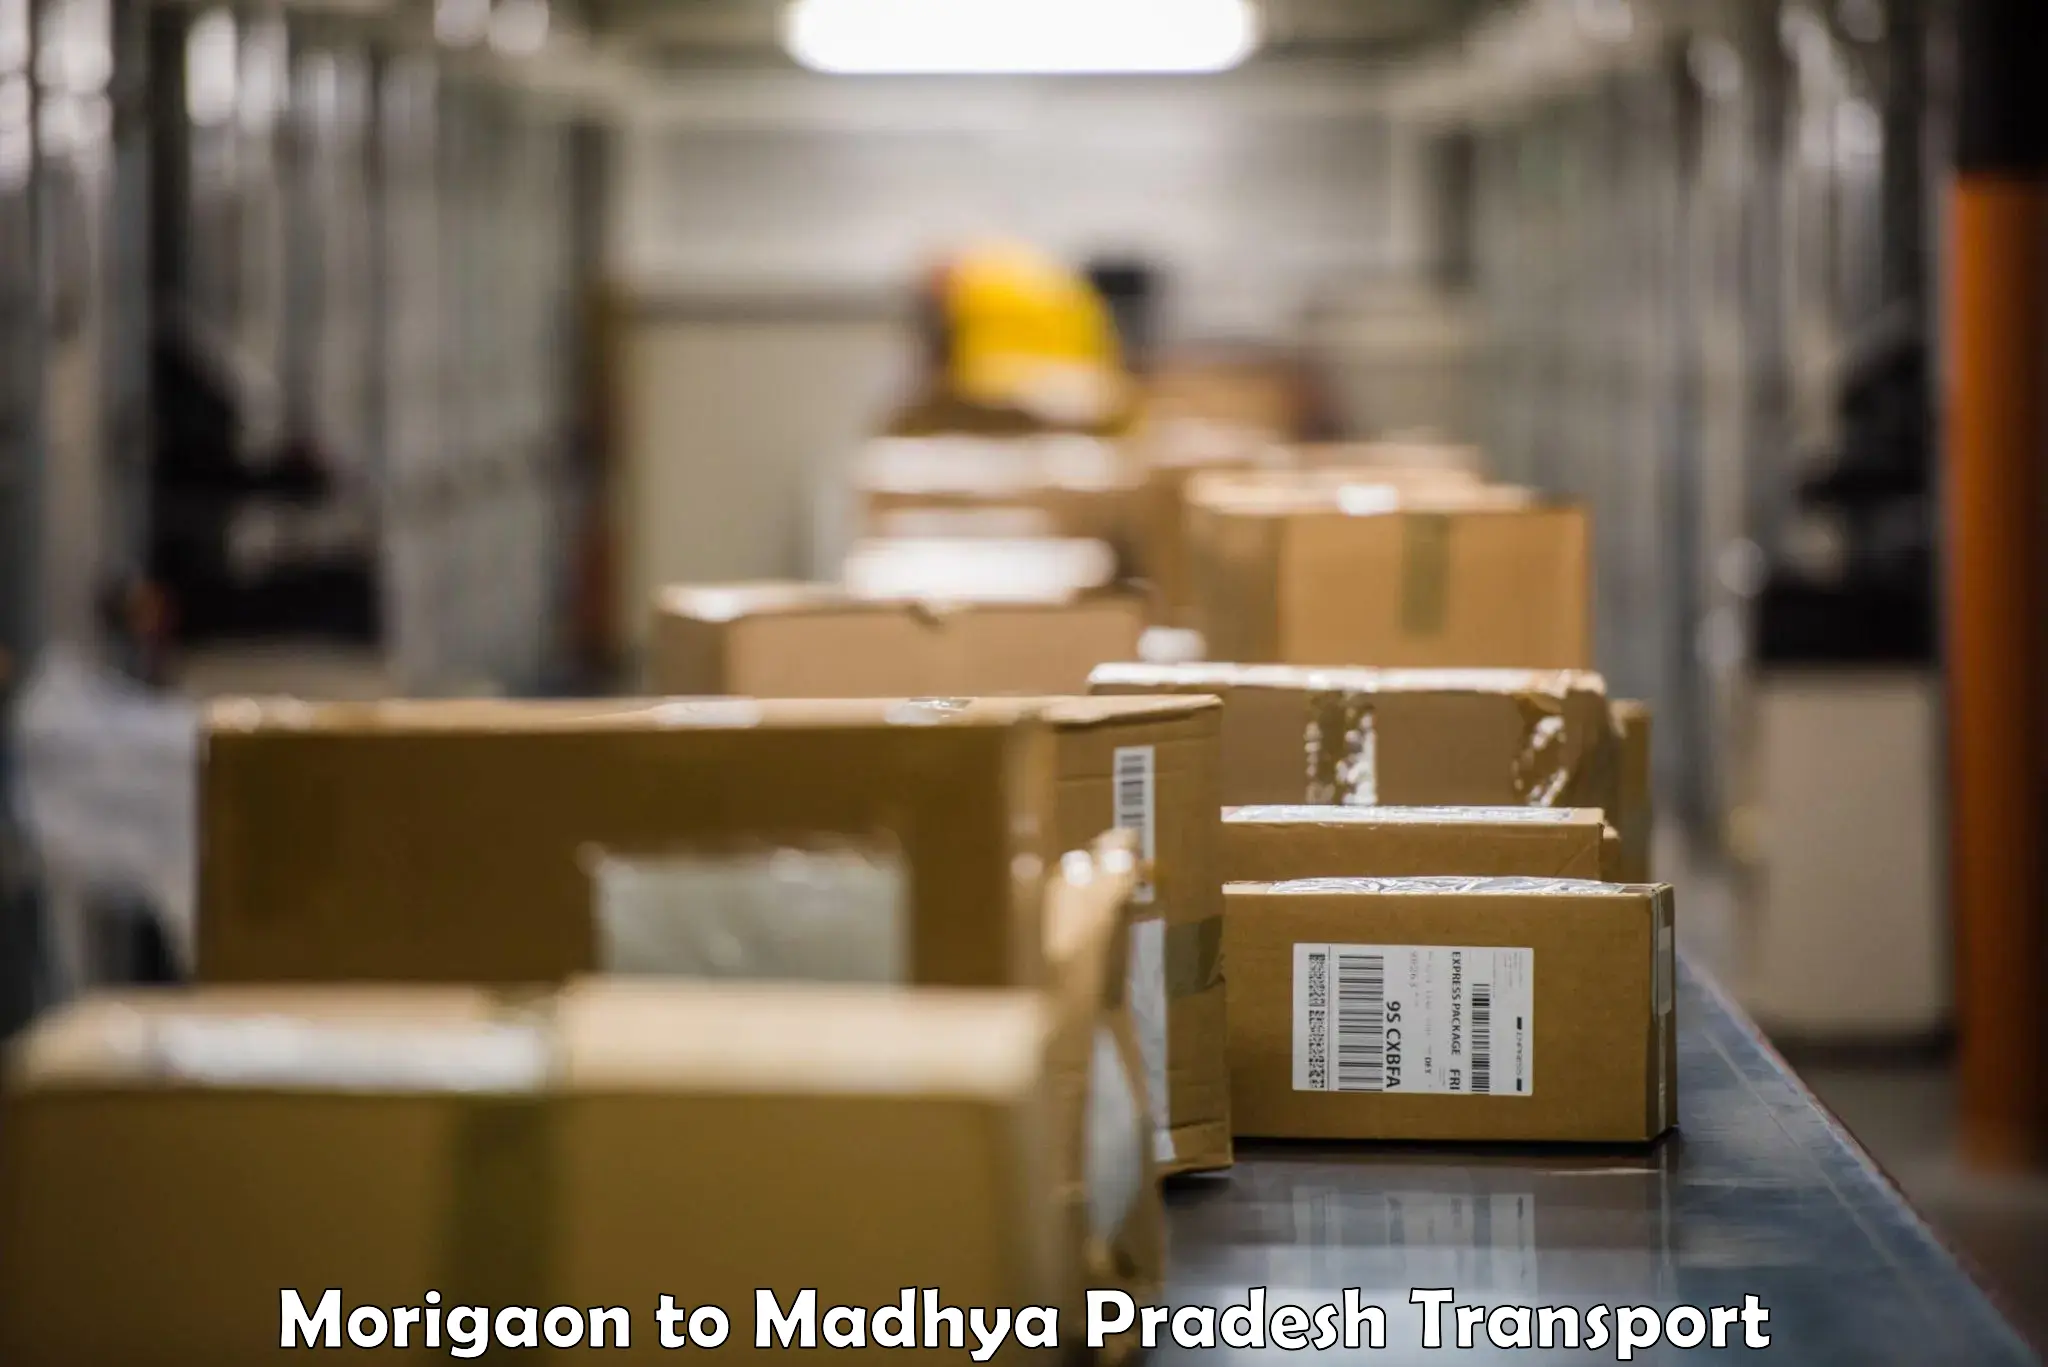 Intercity transport Morigaon to Jaisinghnagar